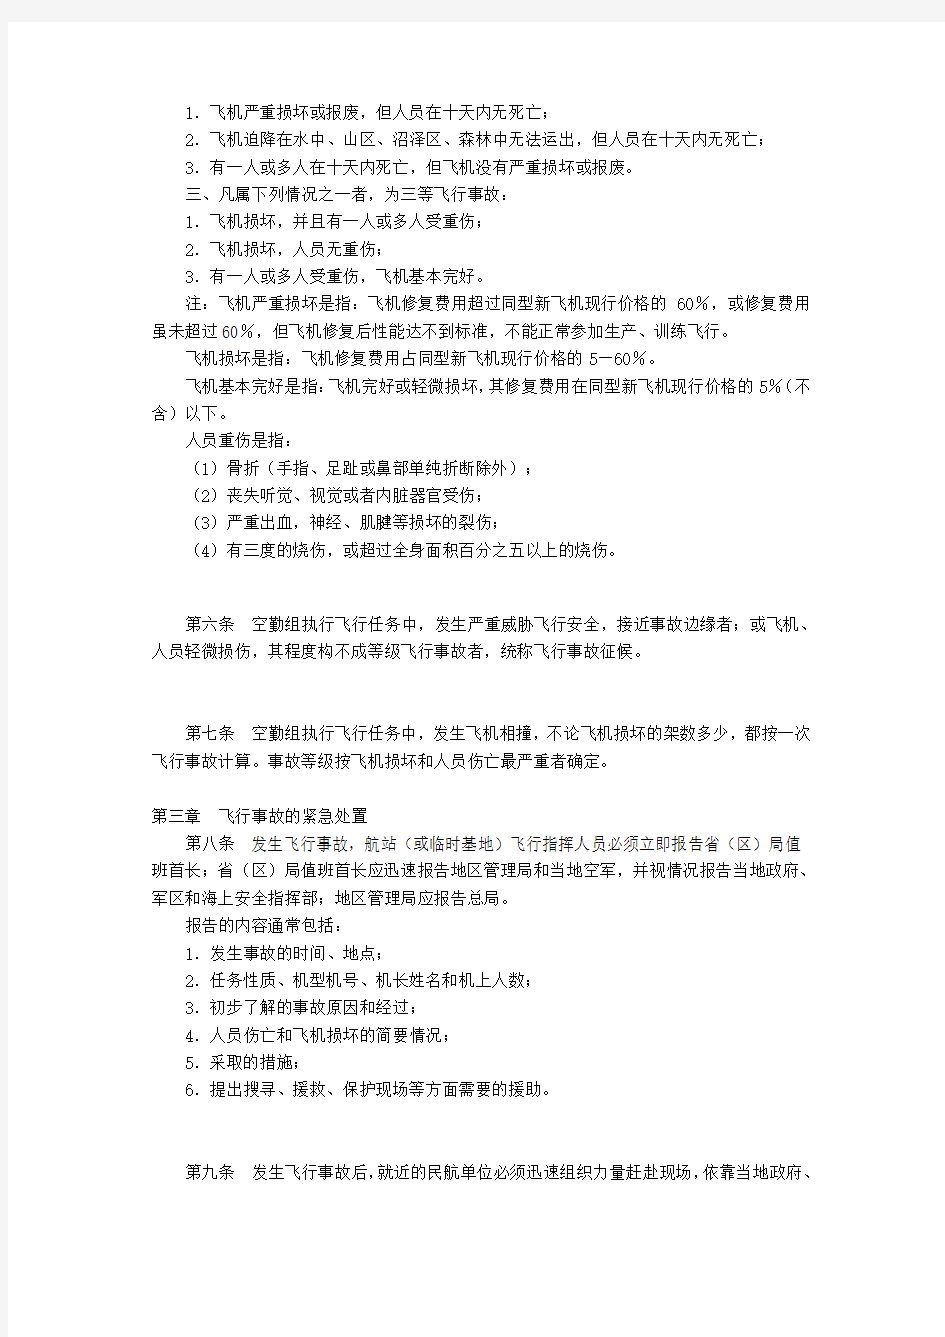 中国民用航空飞行事故调查条例